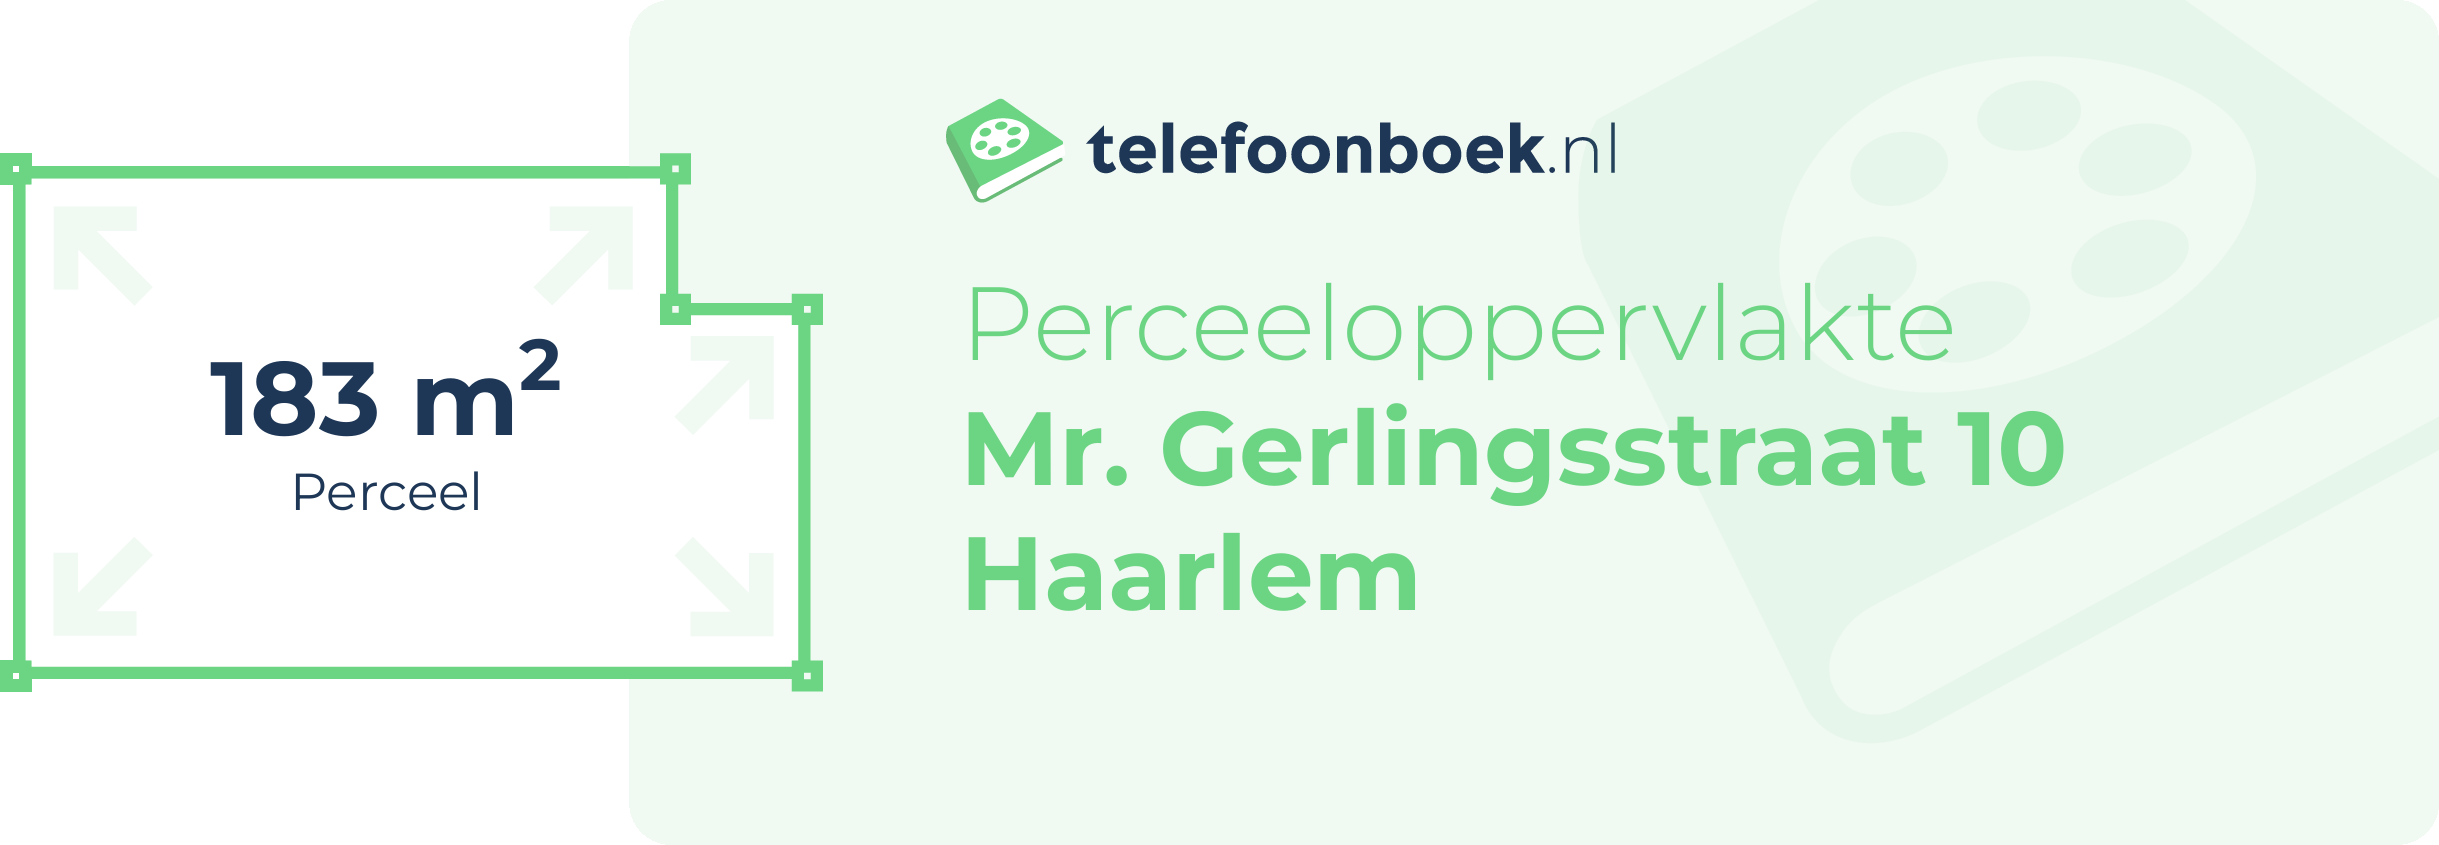 Perceeloppervlakte Mr. Gerlingsstraat 10 Haarlem